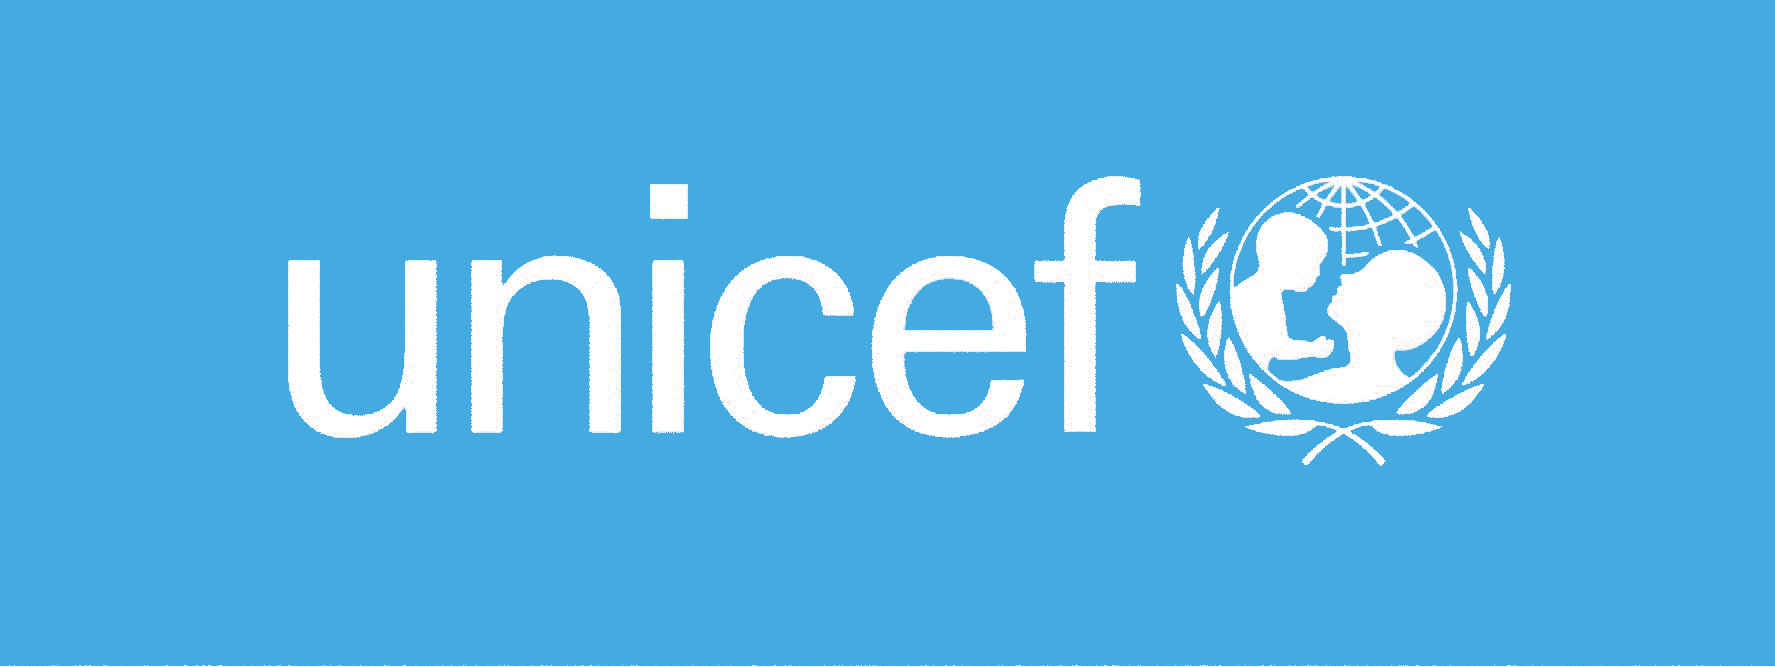 Unicef_logo-8